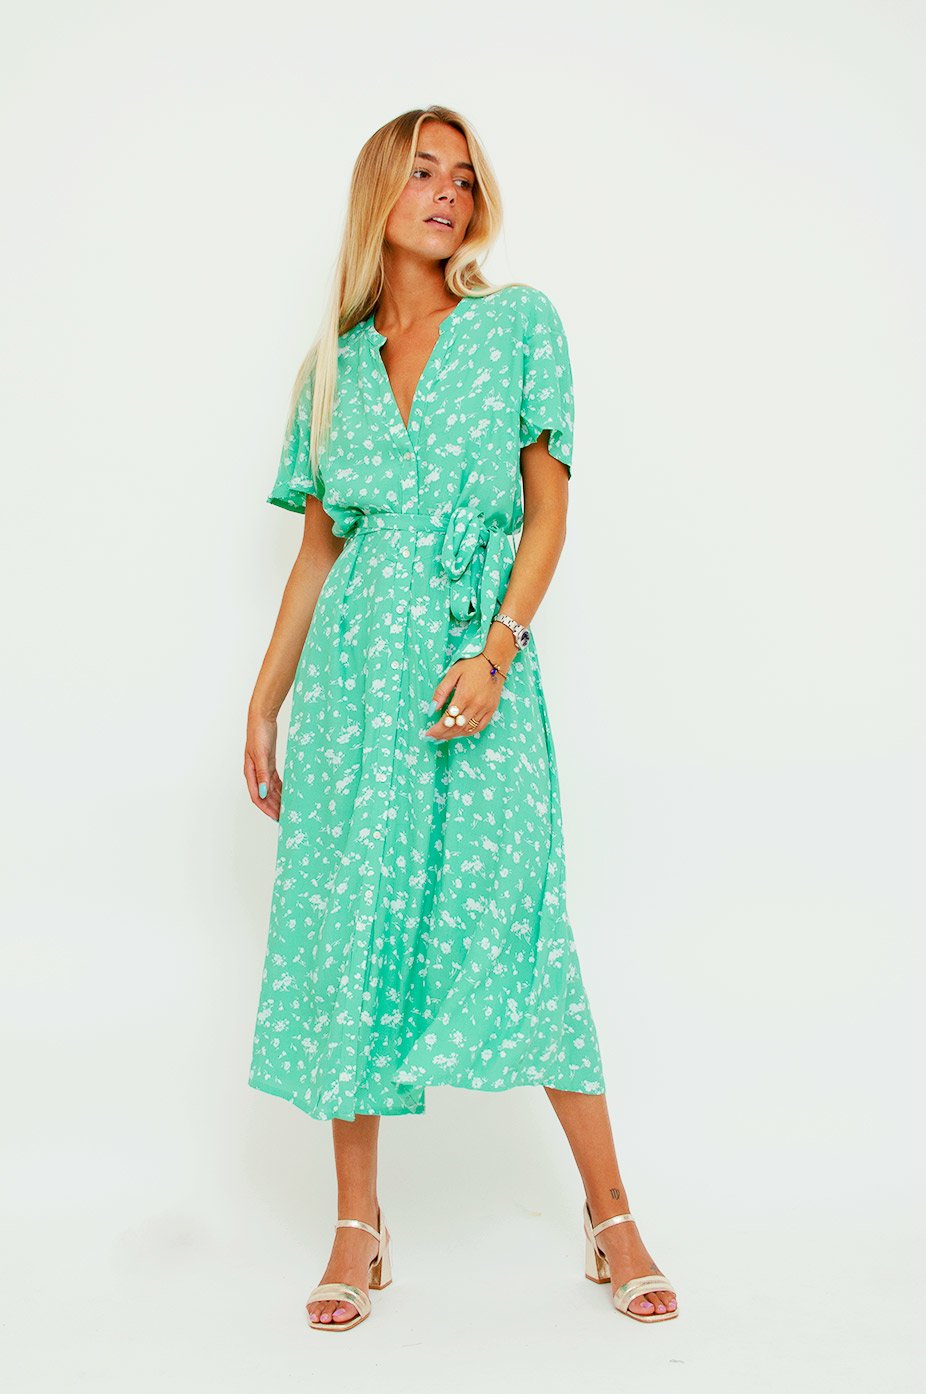 sammentrækning stærk tuberkulose Lane Shade Floral Dress Green Neo Noir - Product - Sienna Goodies